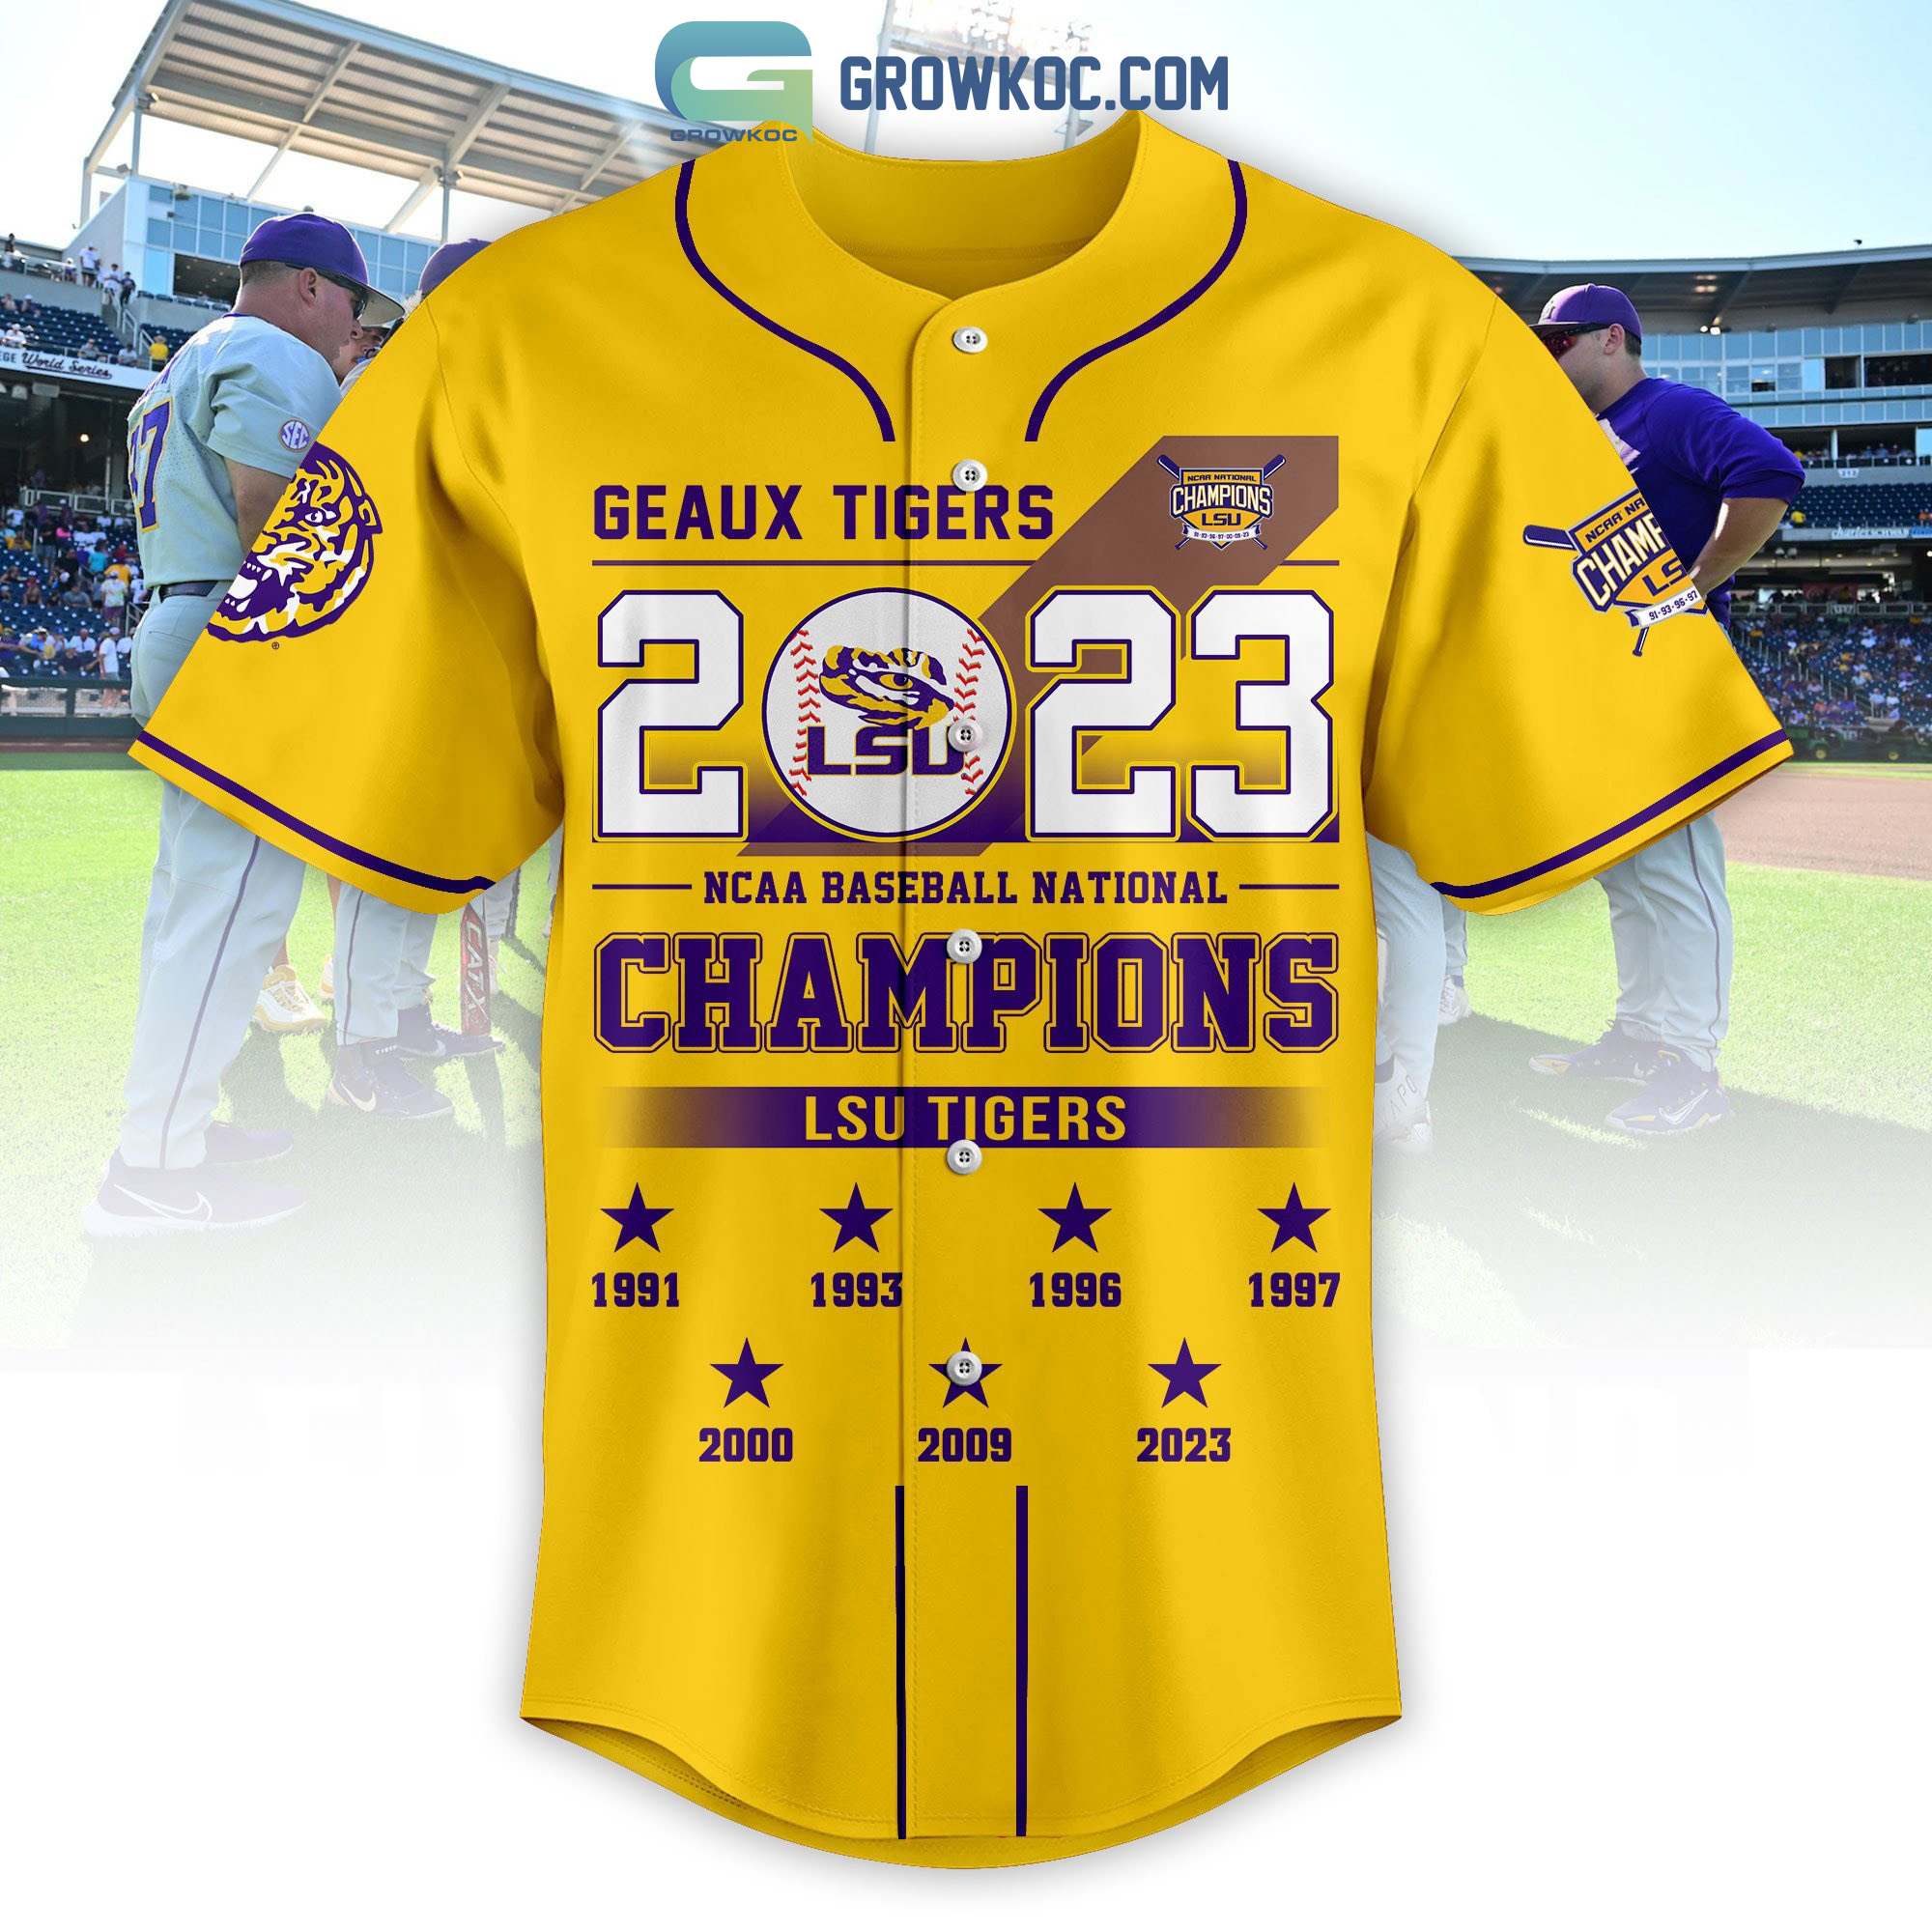 LSU Tigers NCAA Baseball National Champions 2023 Baseball Jersey